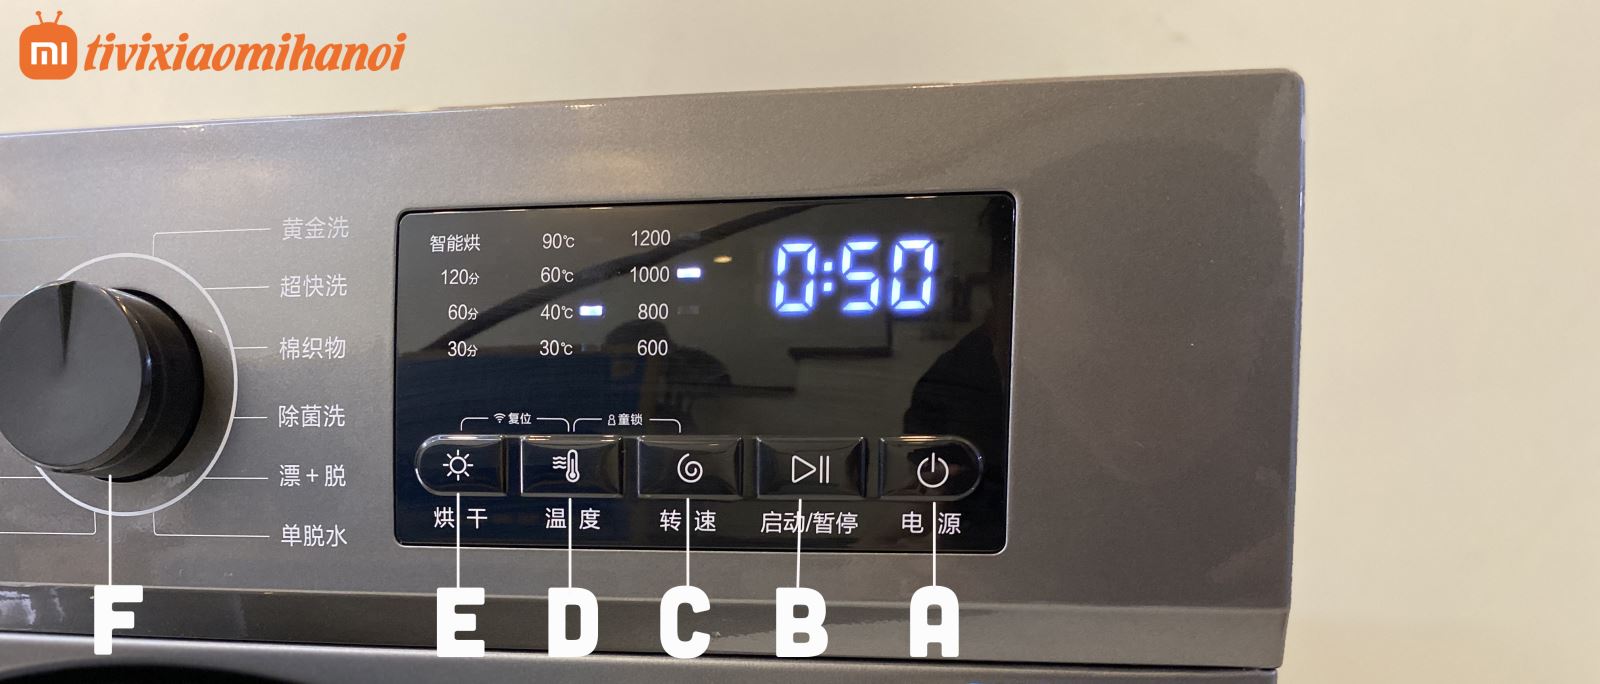 Bảng điều khiển trên máy giặt Xiaomi WD10SA